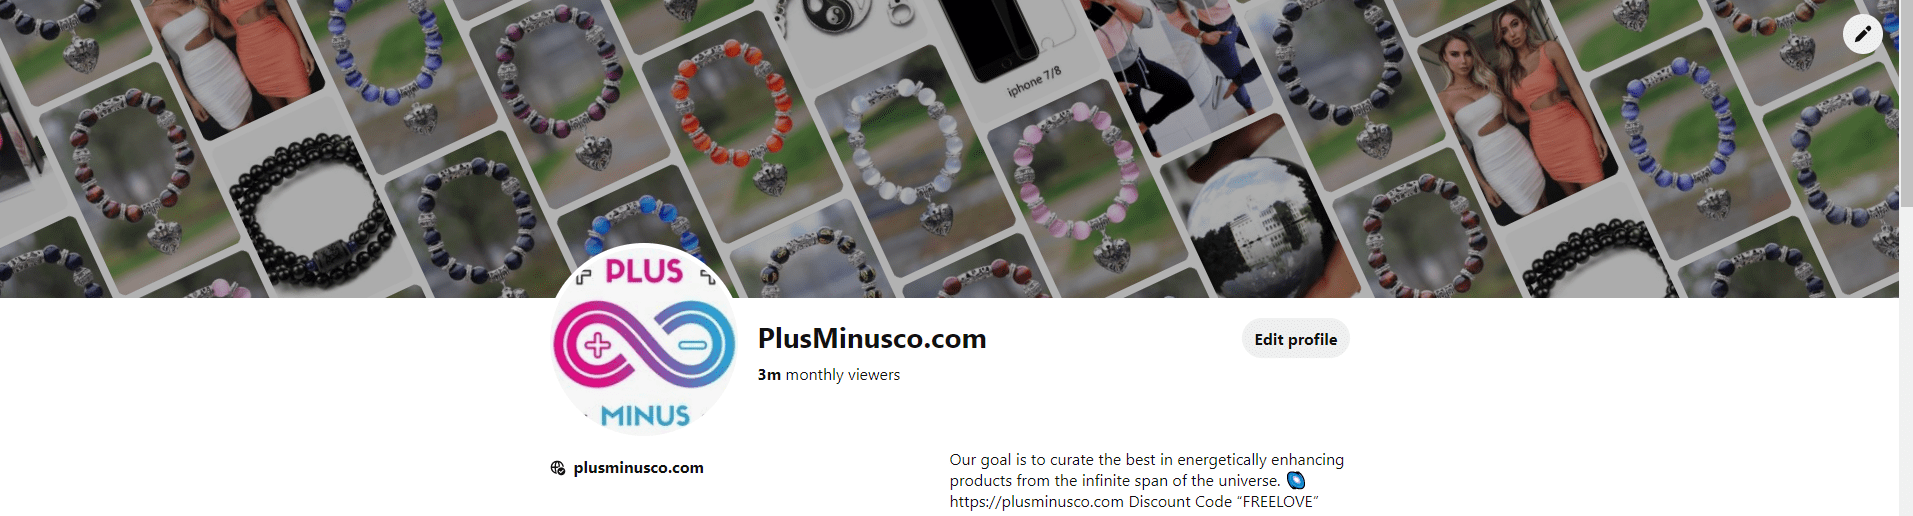 ブレスレット - plusminusco.com